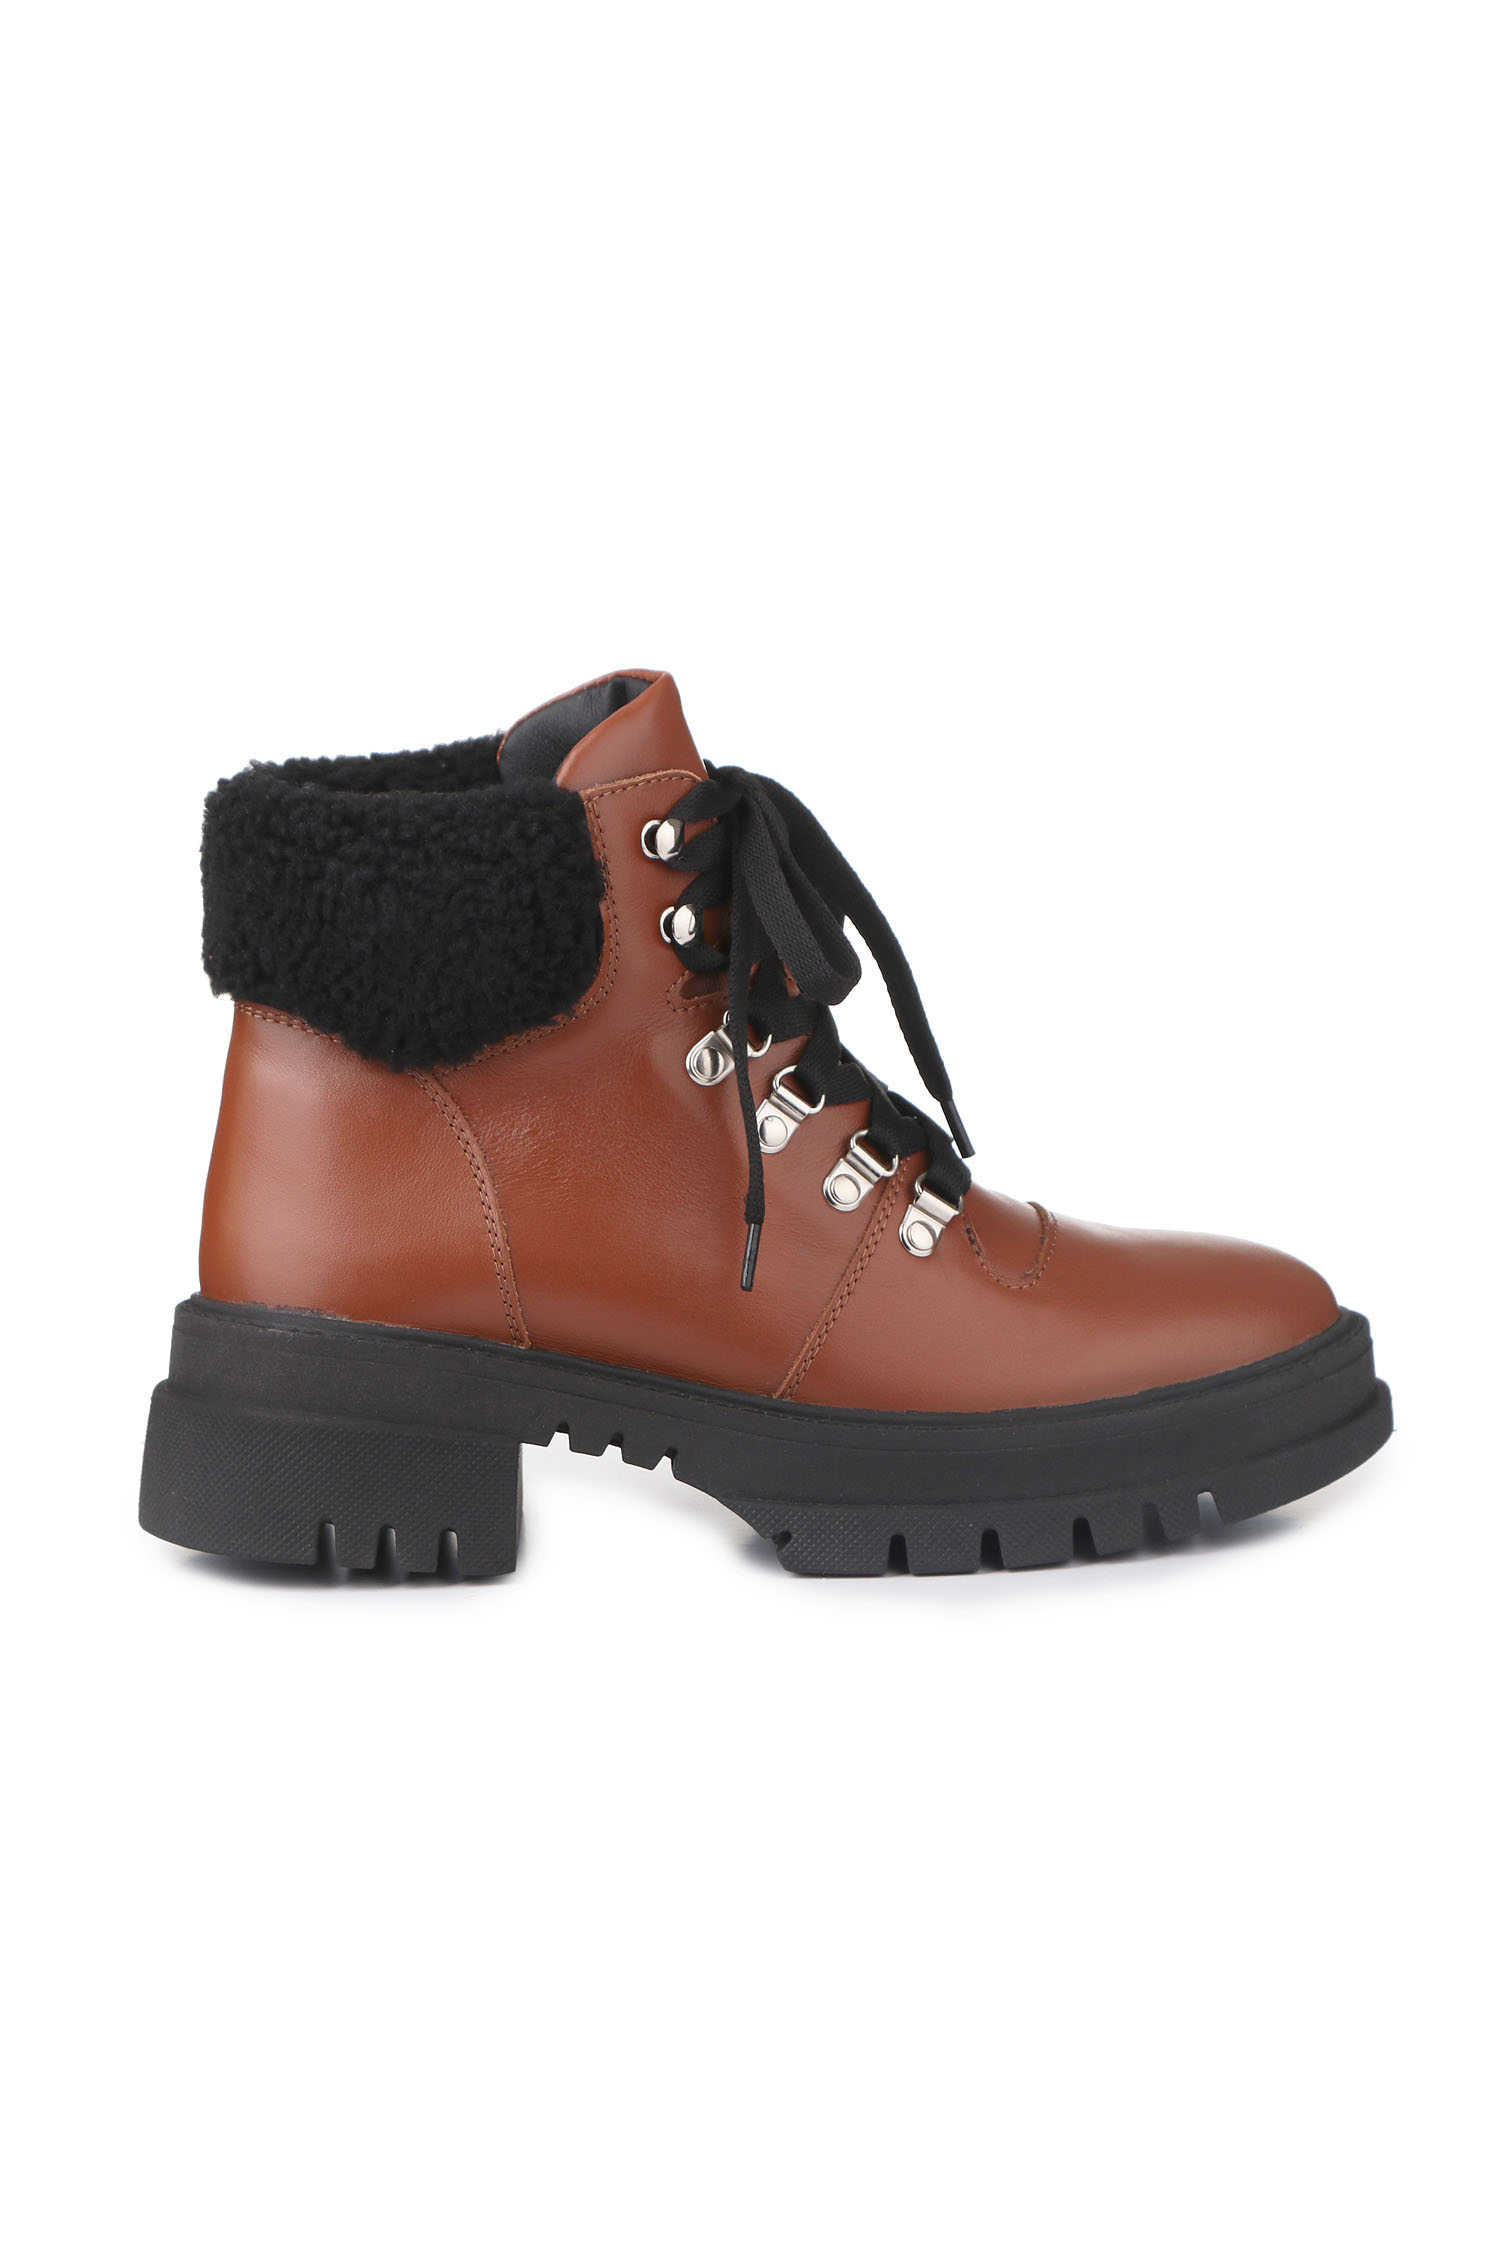 Зимові черевики Hiking boots кемел з чорним хутром - THE LACE фото 123290